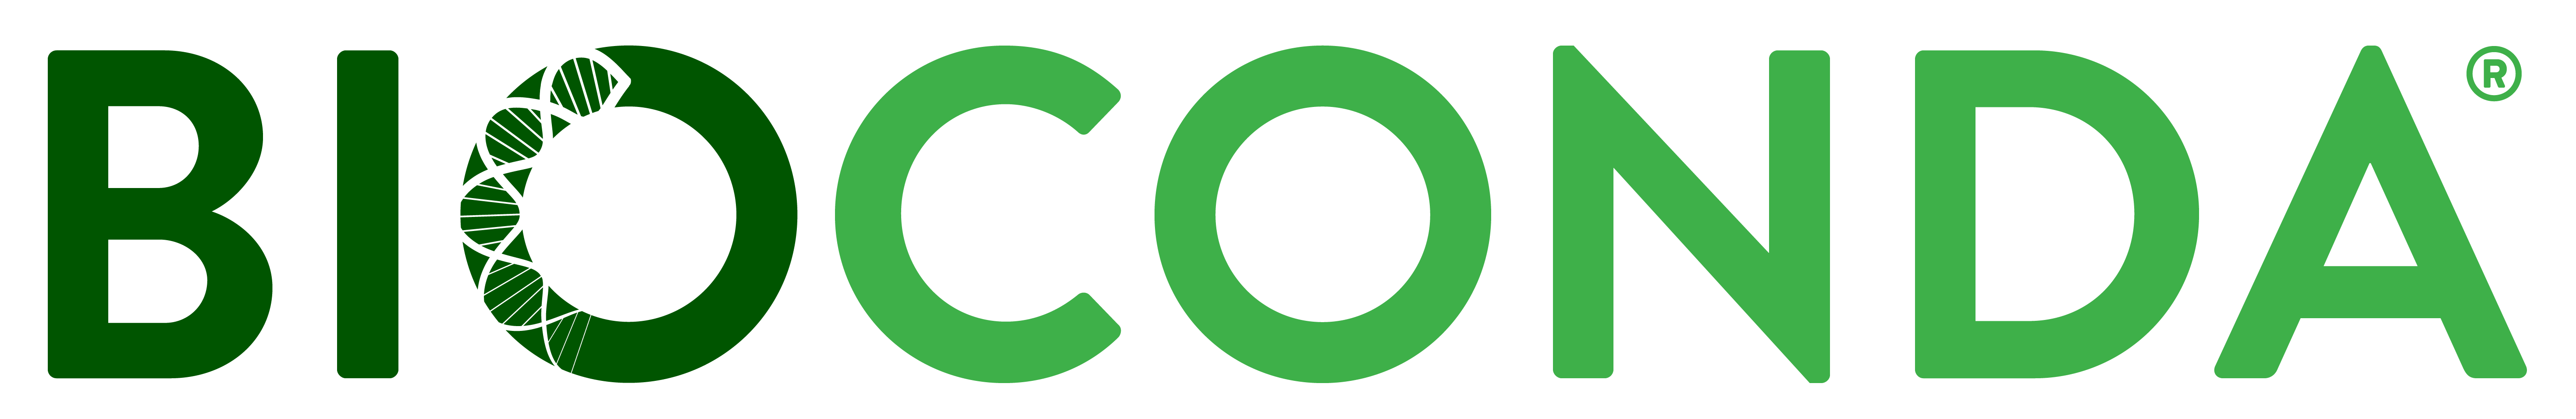 bioconda logo. 